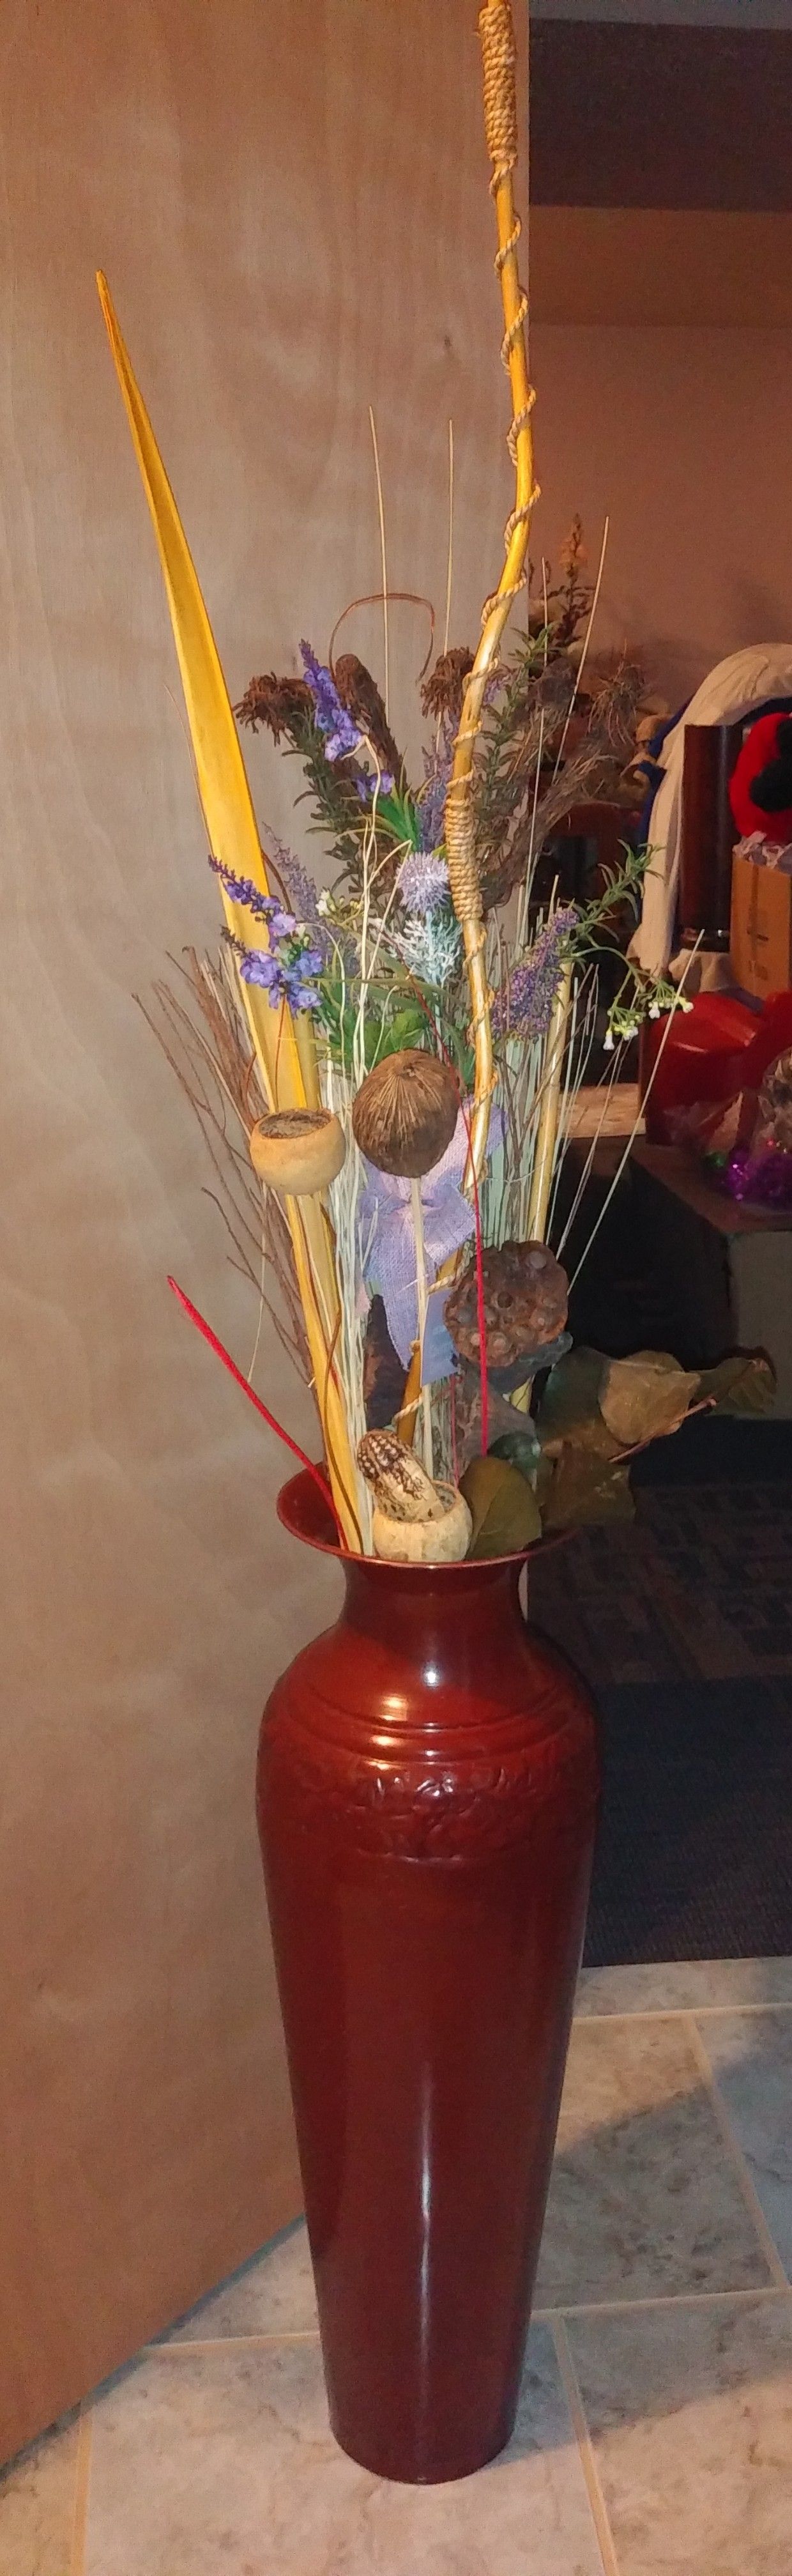 Beautiful flowers in big vase